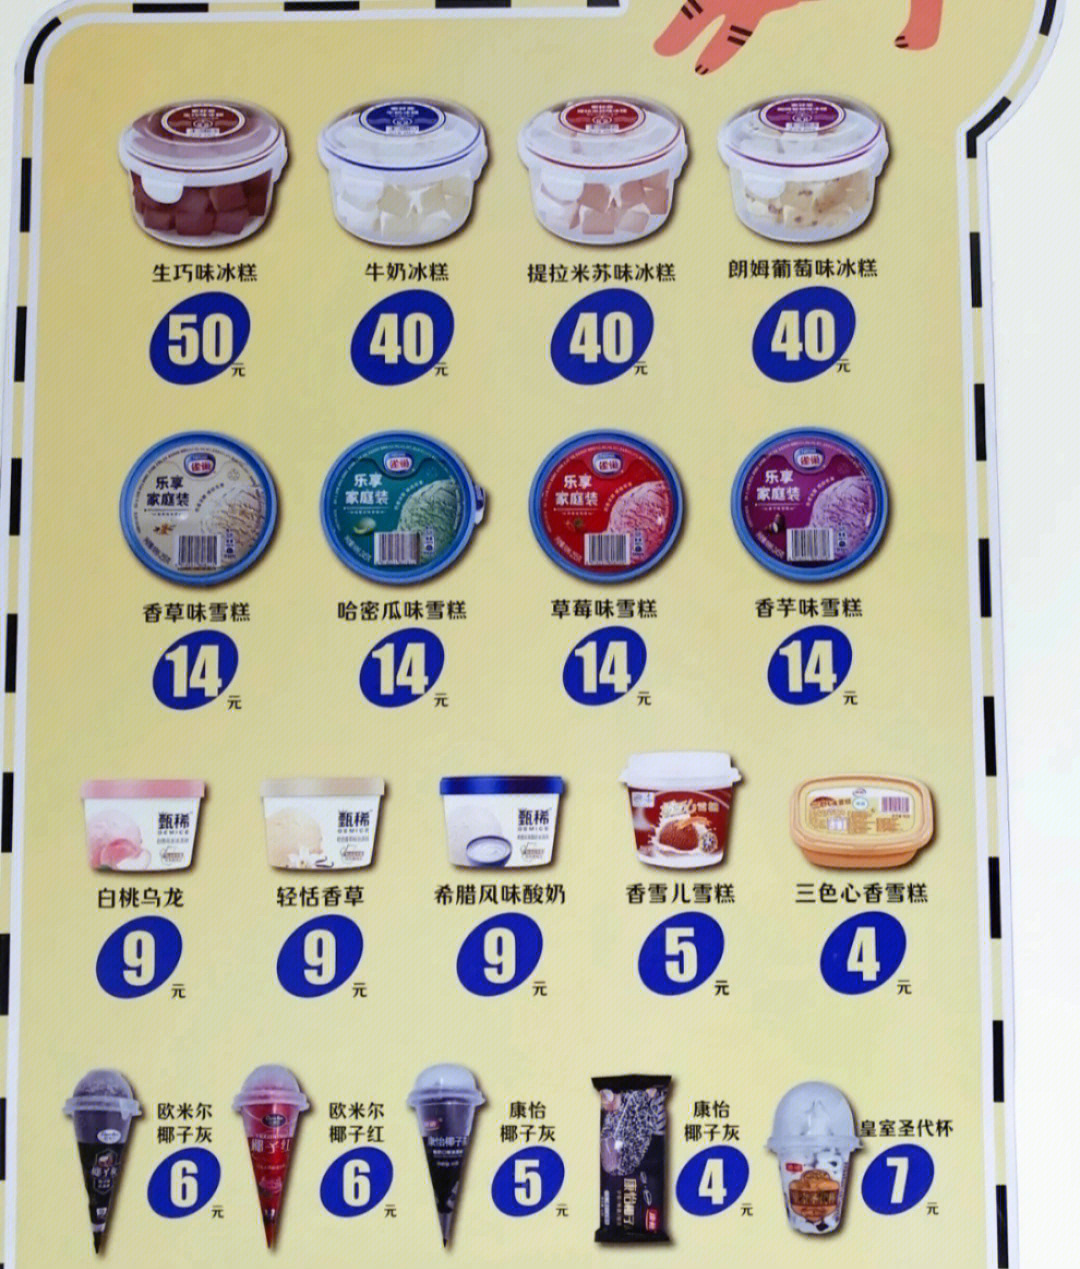 超市冰激凌雪糕价格整理现在都这么贵了